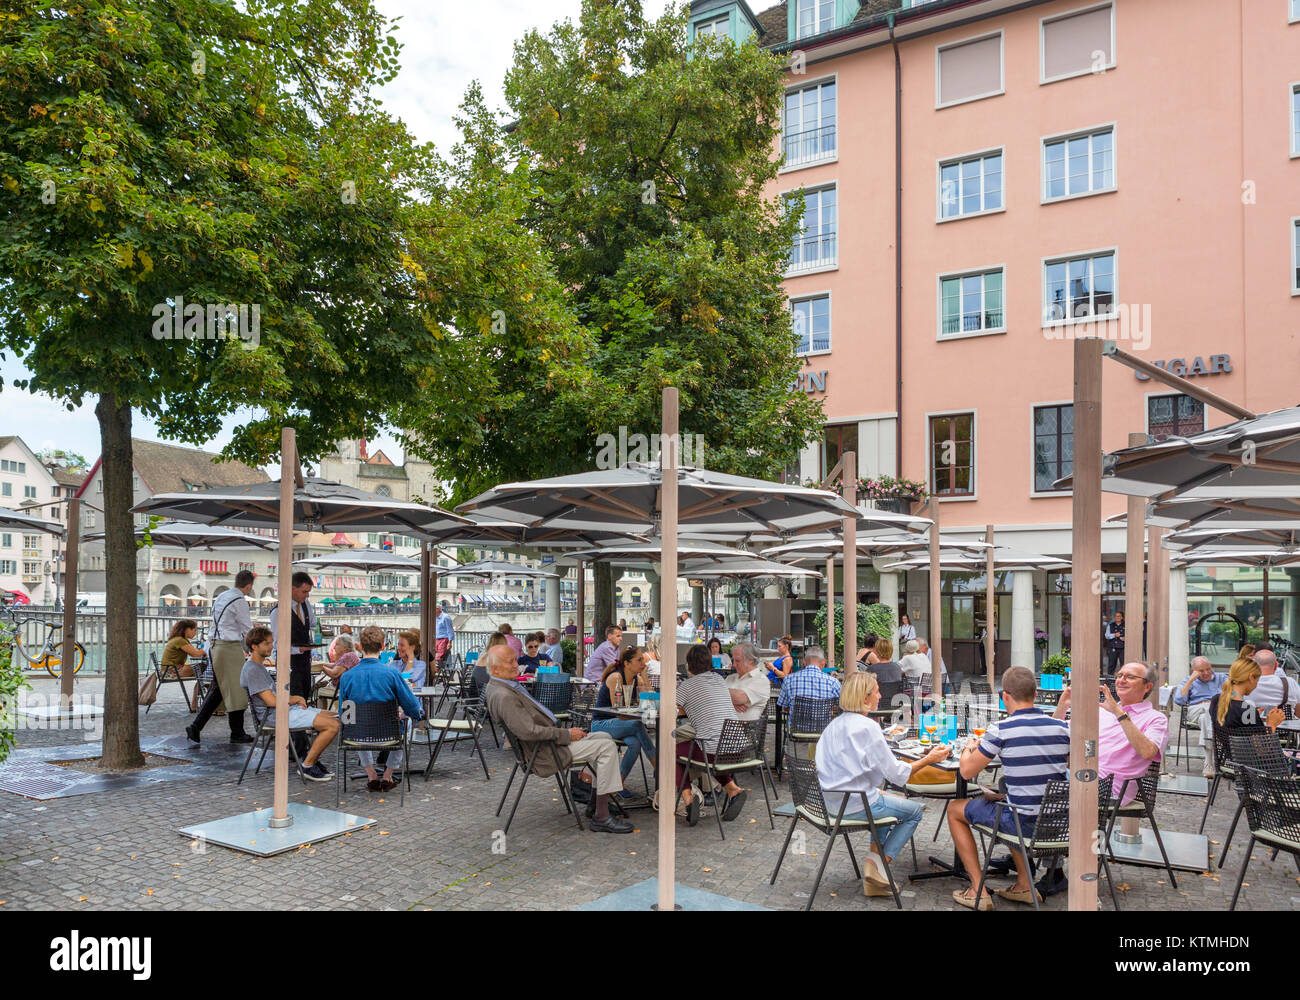 Cafe on Weinplatz by the River Limmet, Zurich, Switzerland Stock Photo